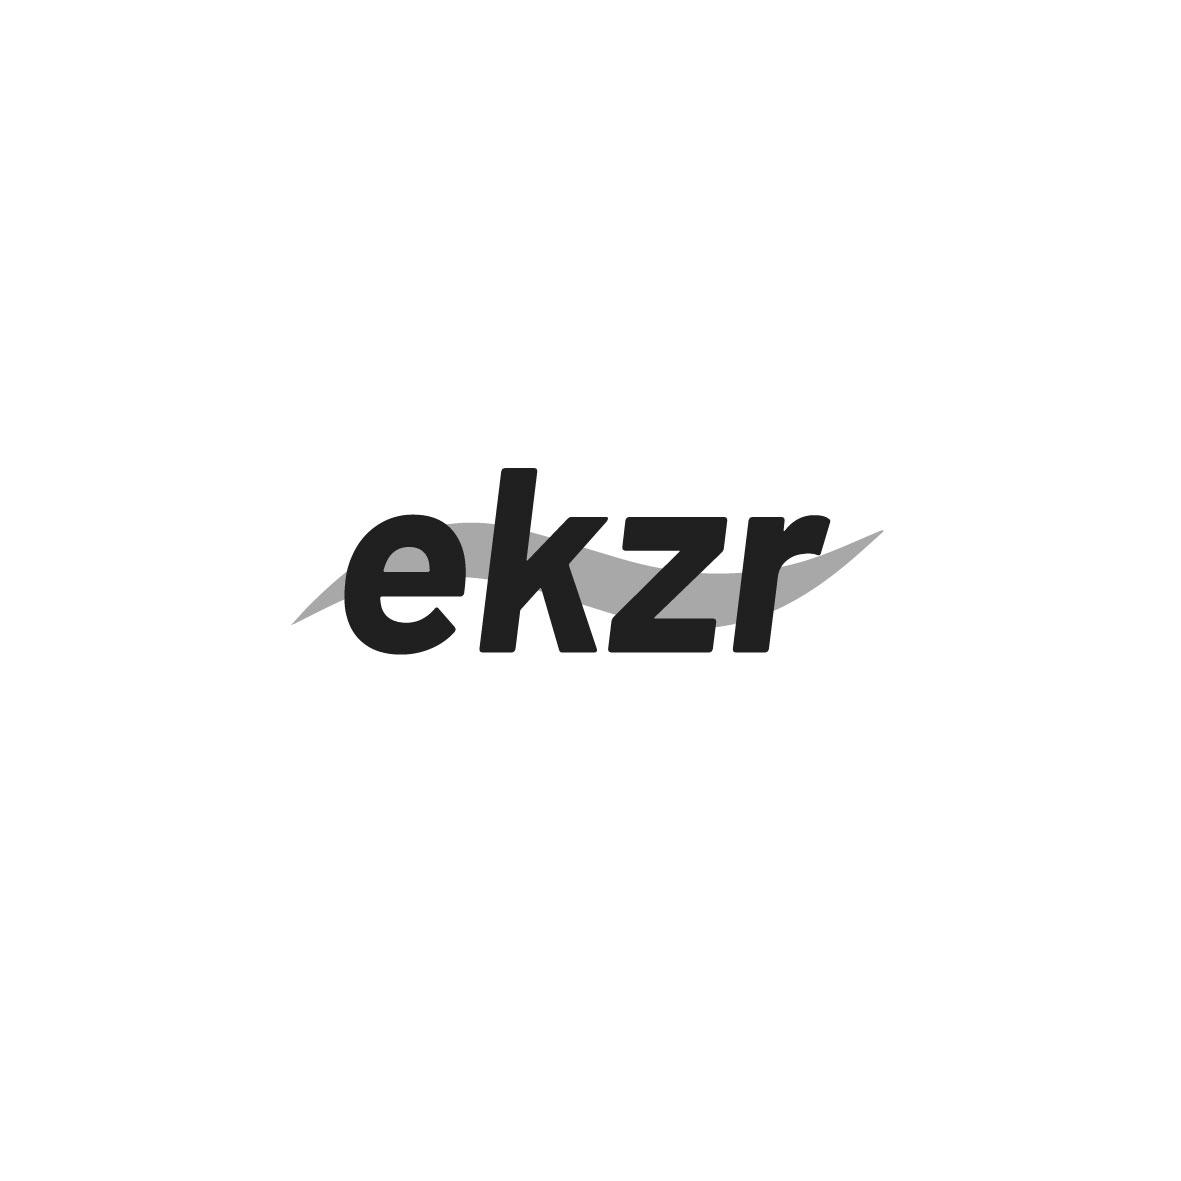 EKZR 商标公告